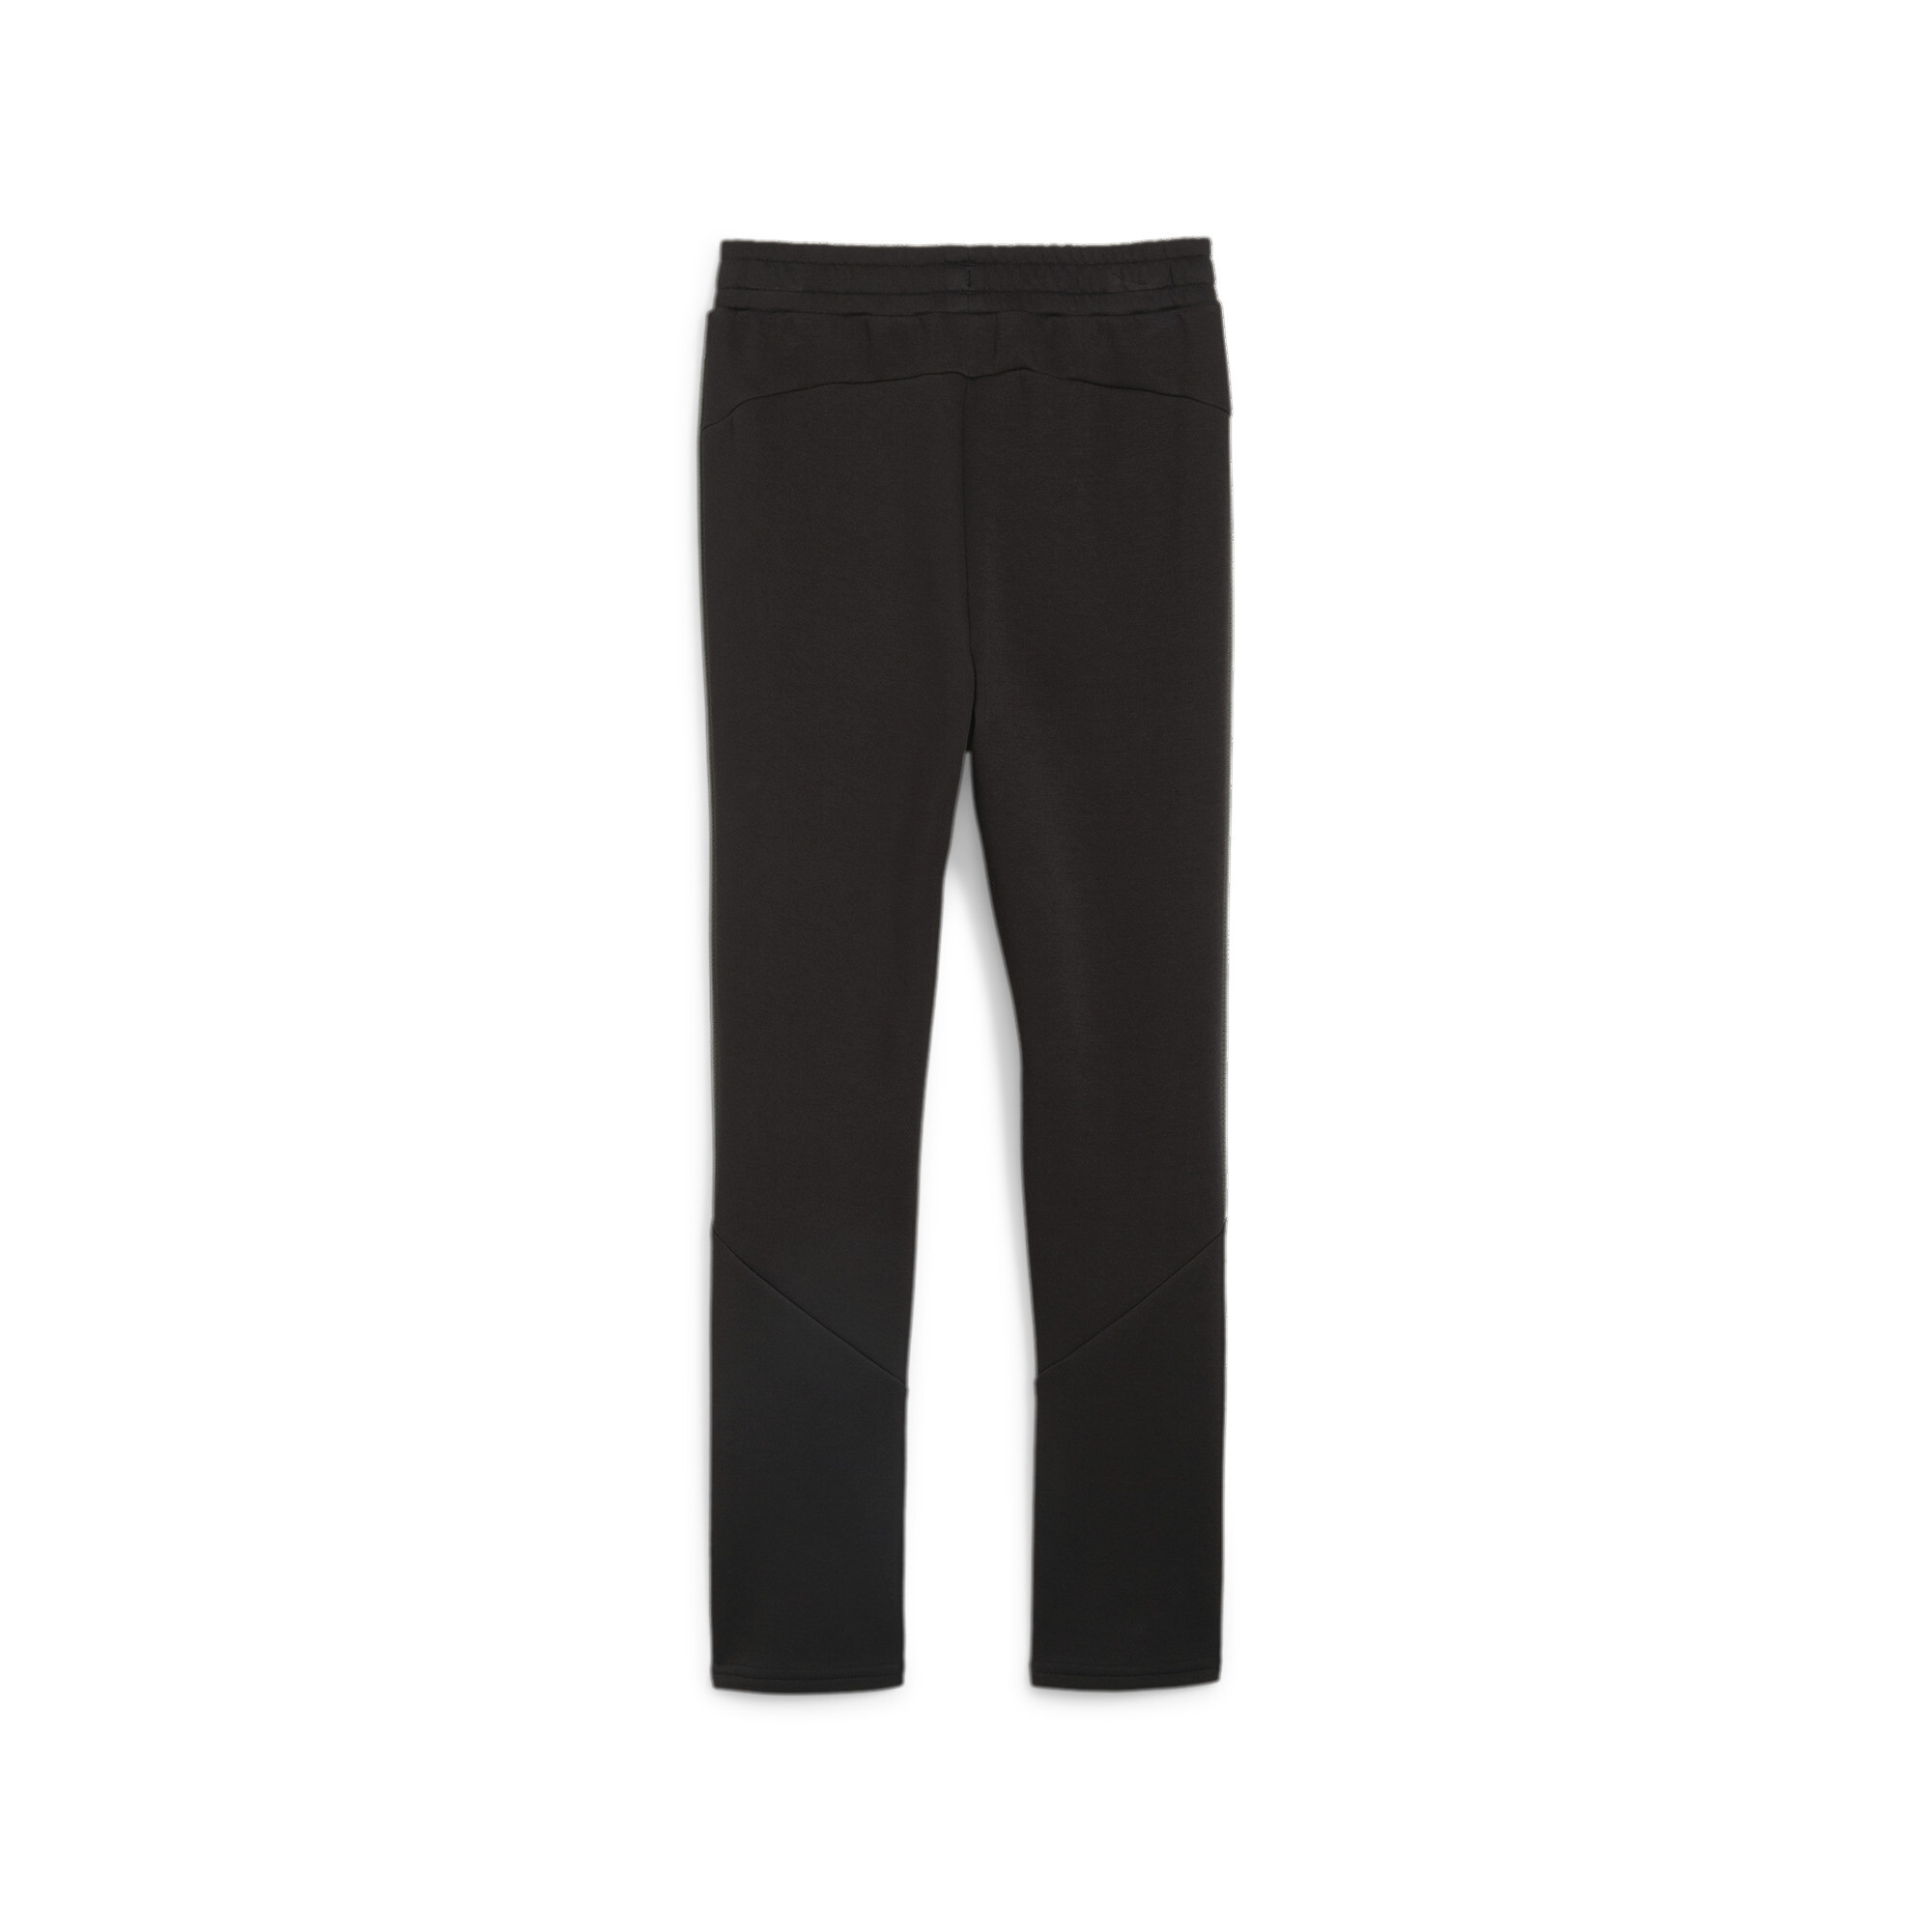 PUMA EVOSTRIPE Sweatpants In Black, Size 7-8 Youth